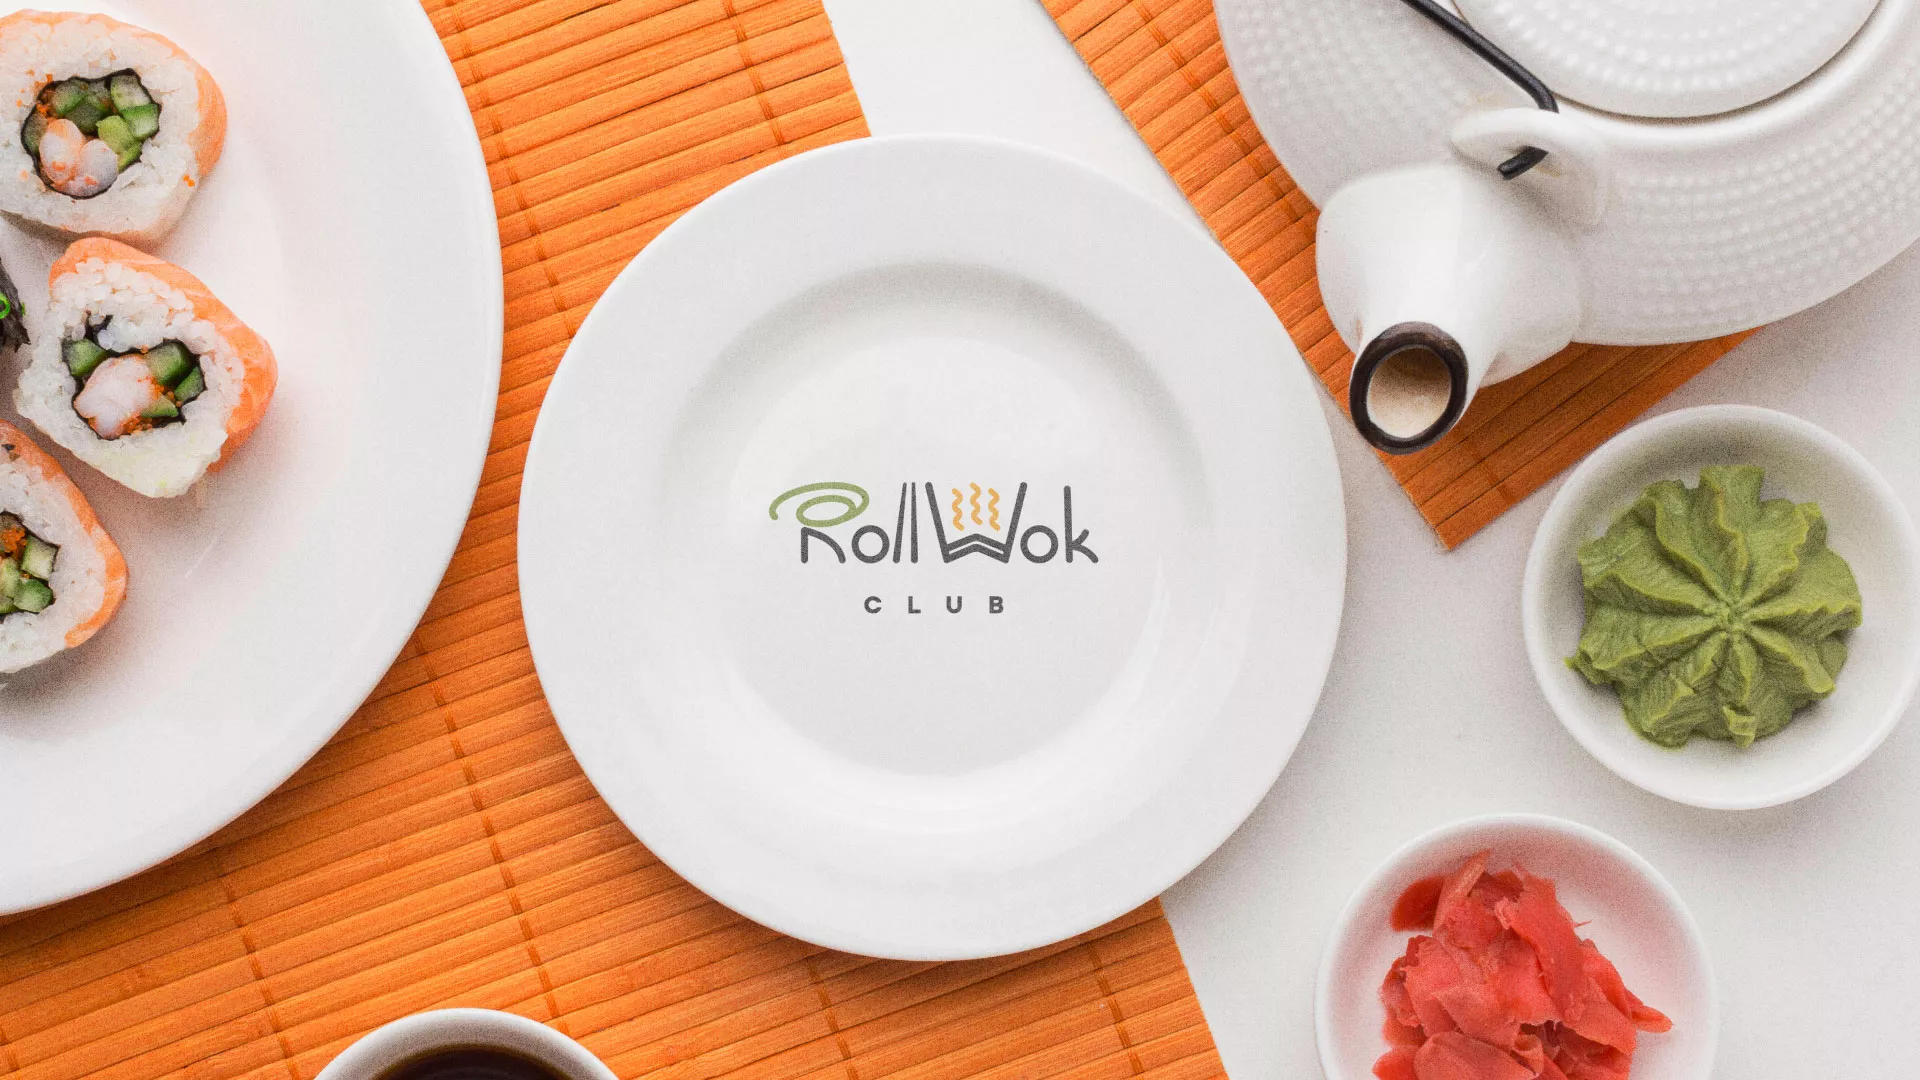 Разработка логотипа и фирменного стиля суши-бара «Roll Wok Club» в Светлом